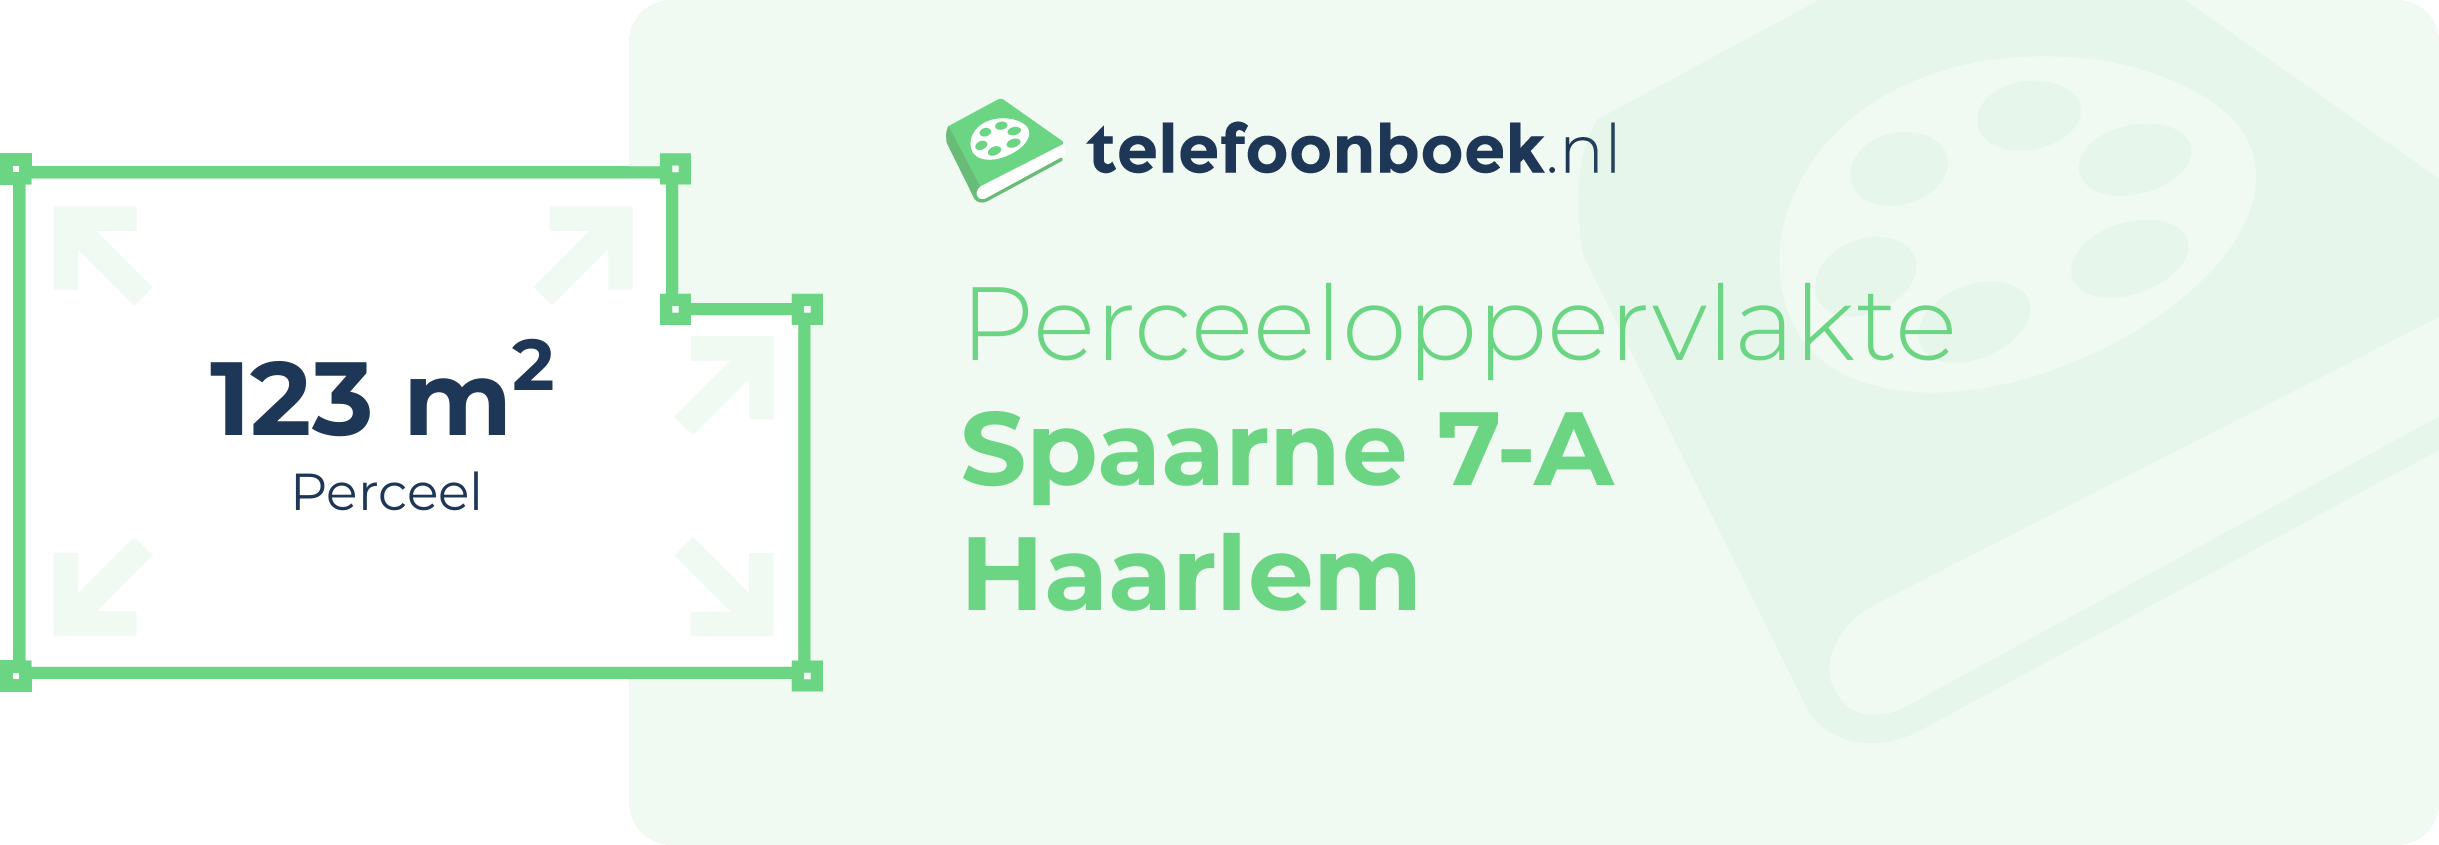 Perceeloppervlakte Spaarne 7-A Haarlem